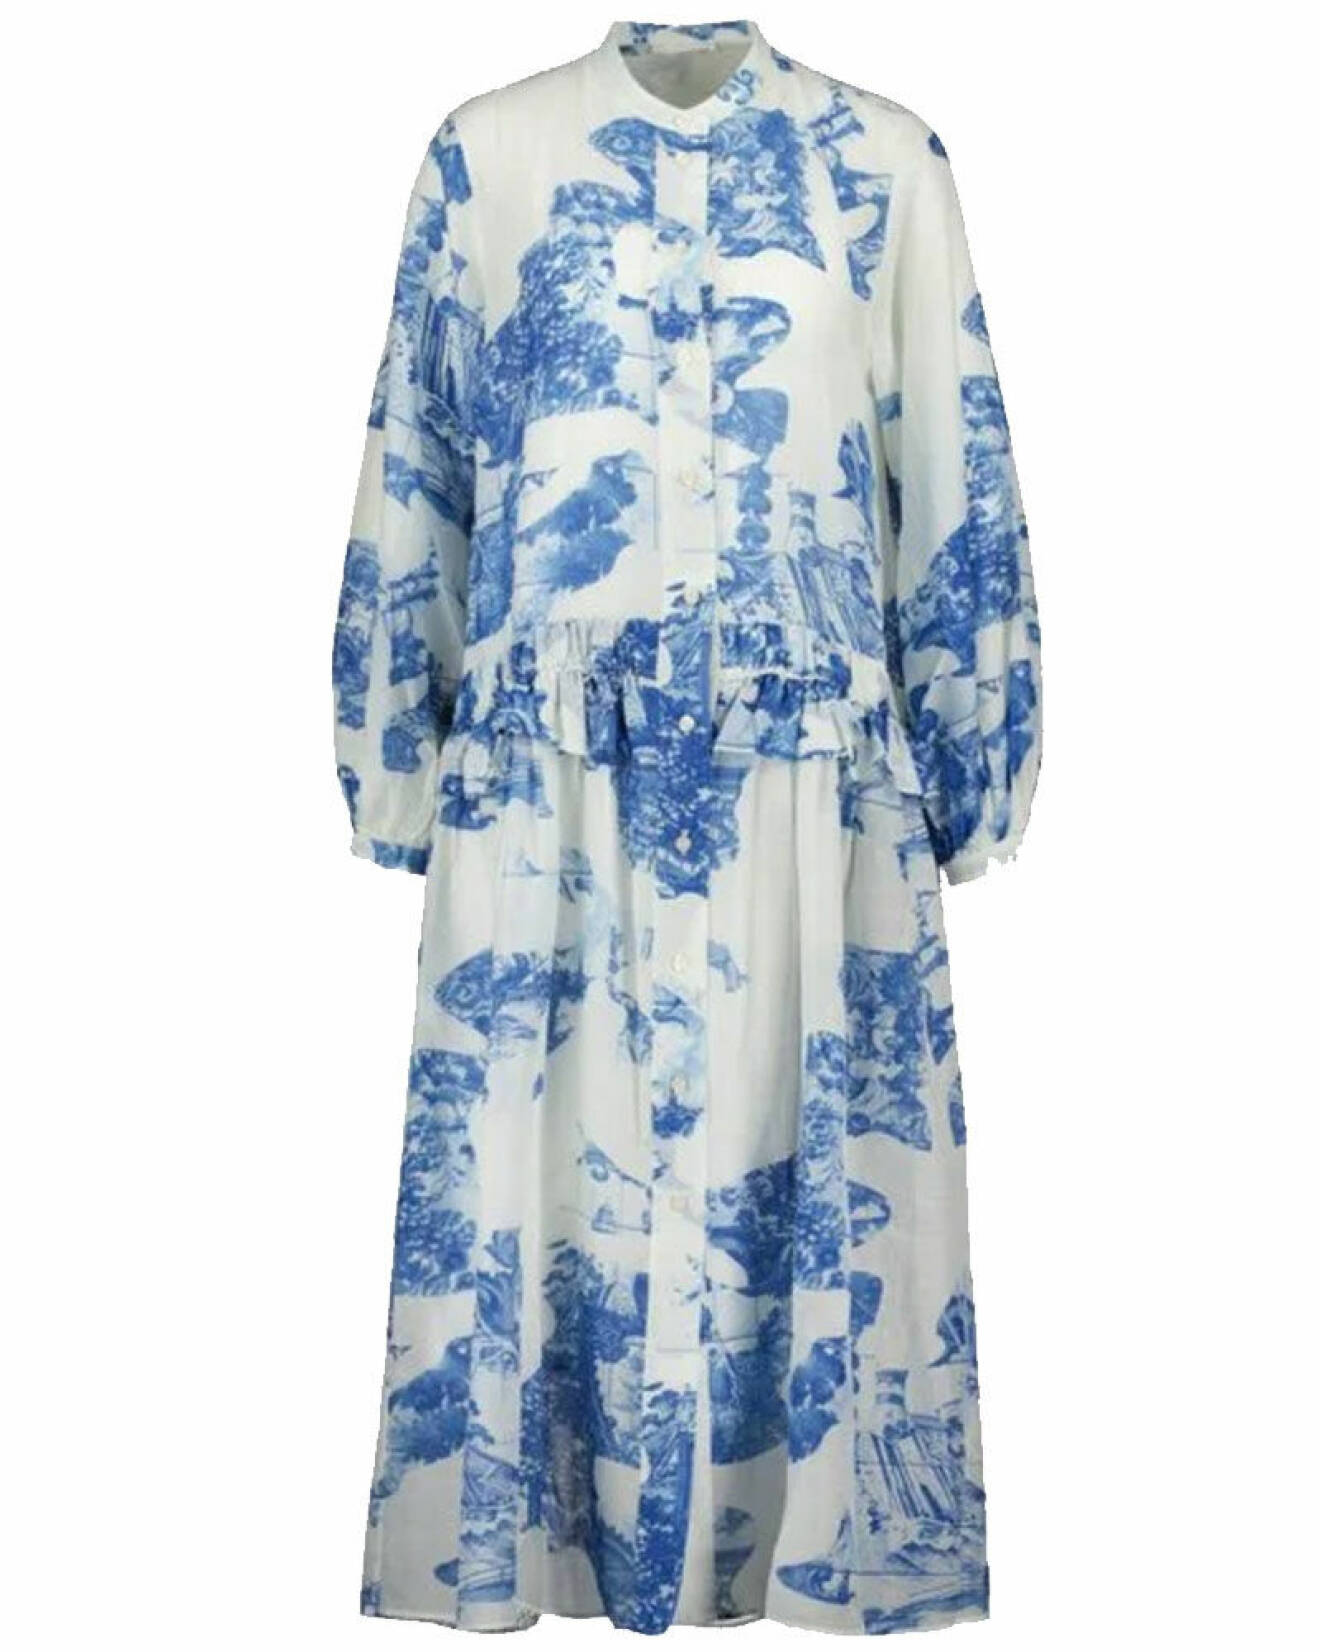 mönstrad klänning i vit och blå